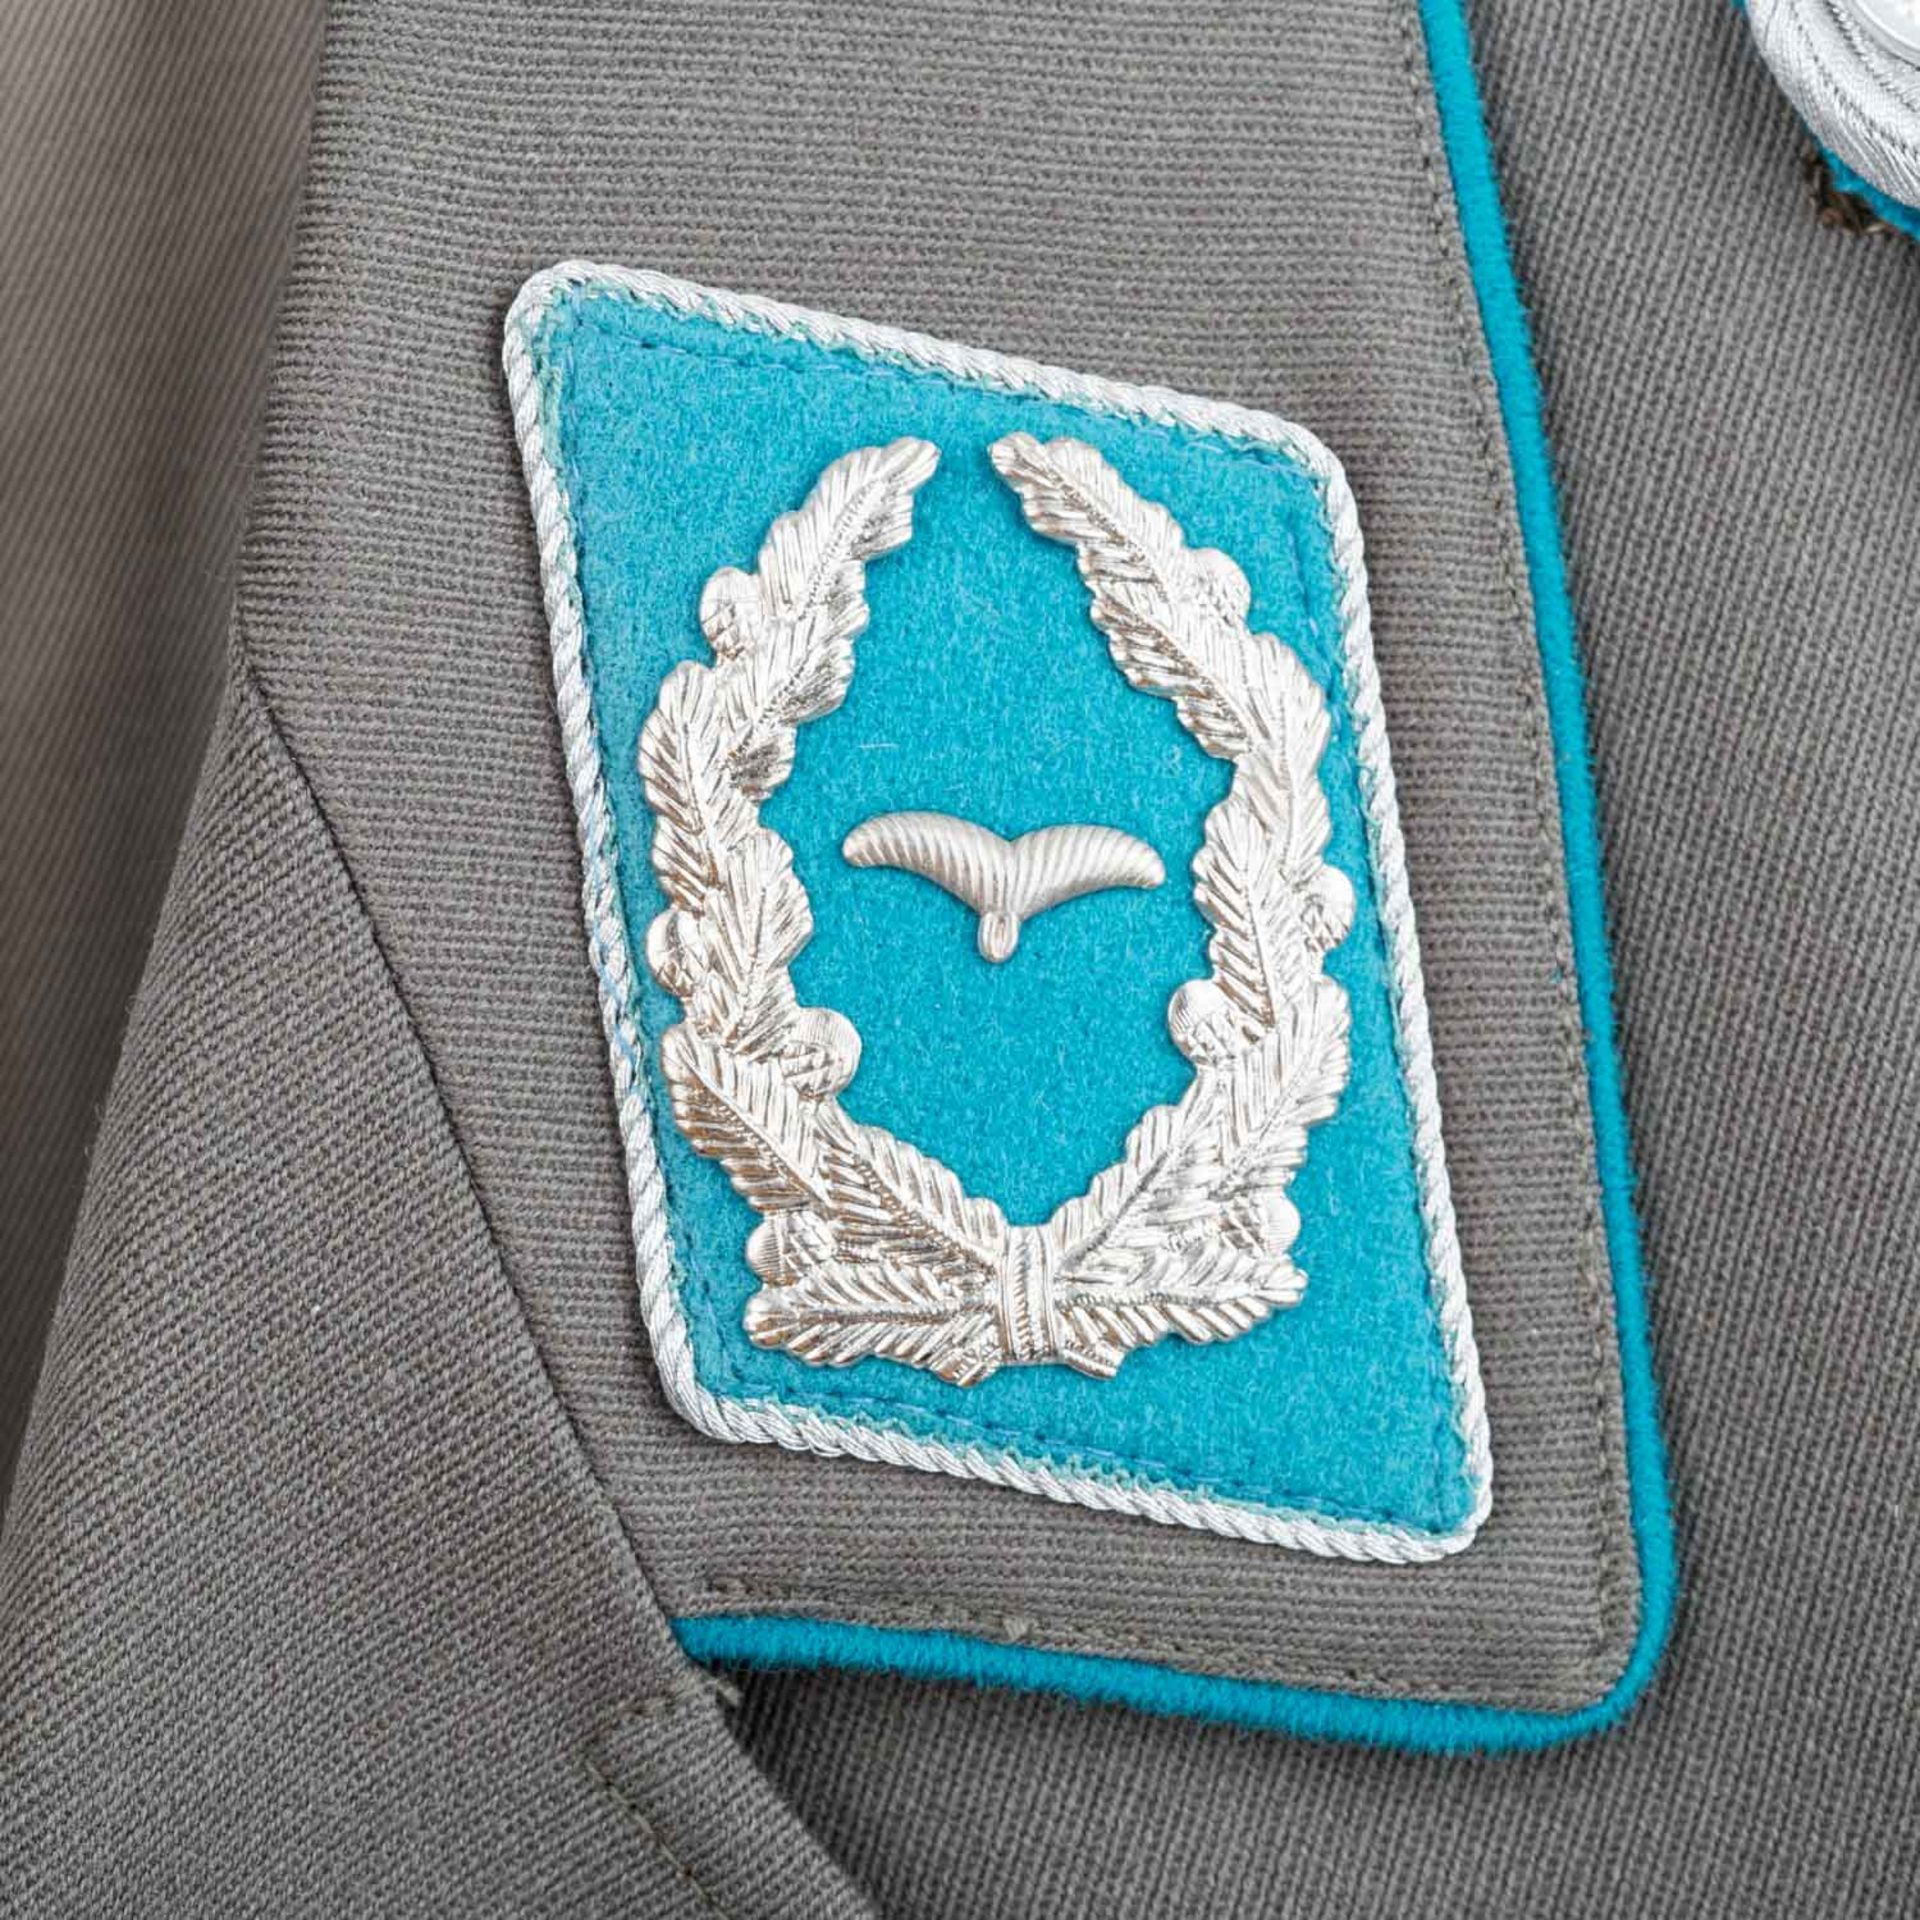 Uniformen - Dienstjacke der Nationalen Volksarmee - Image 4 of 6